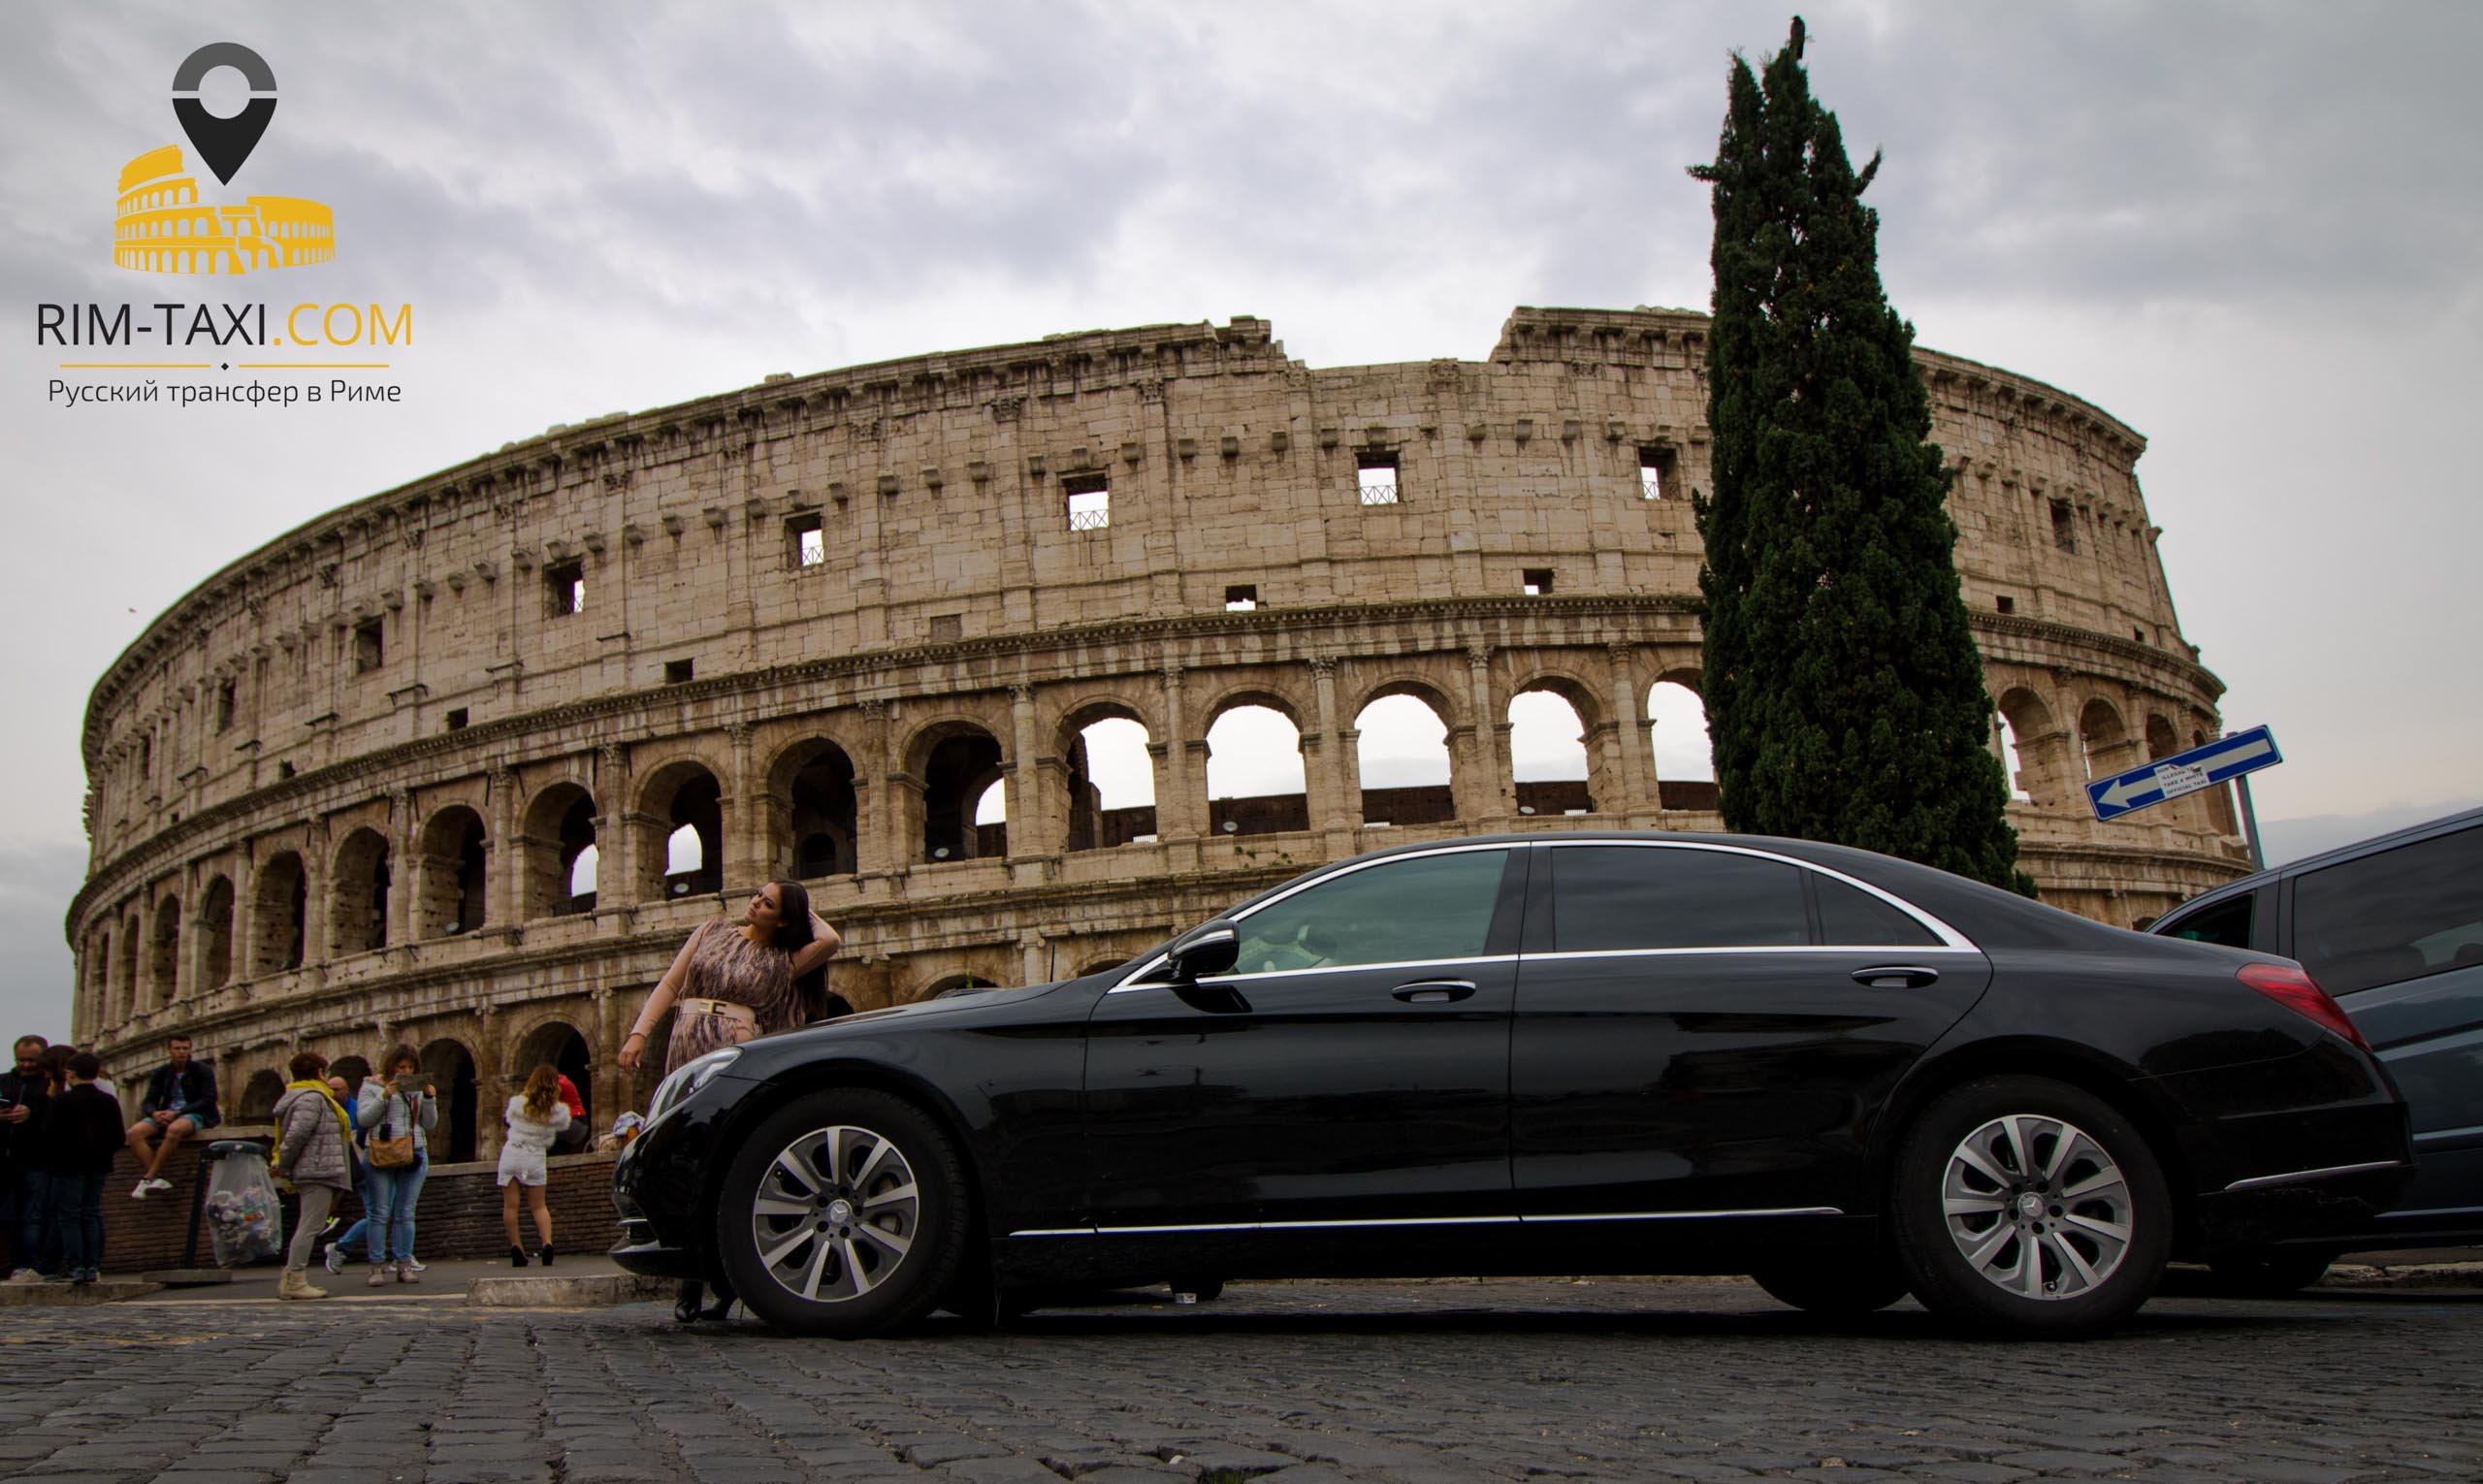 Рим такси возле Колизея